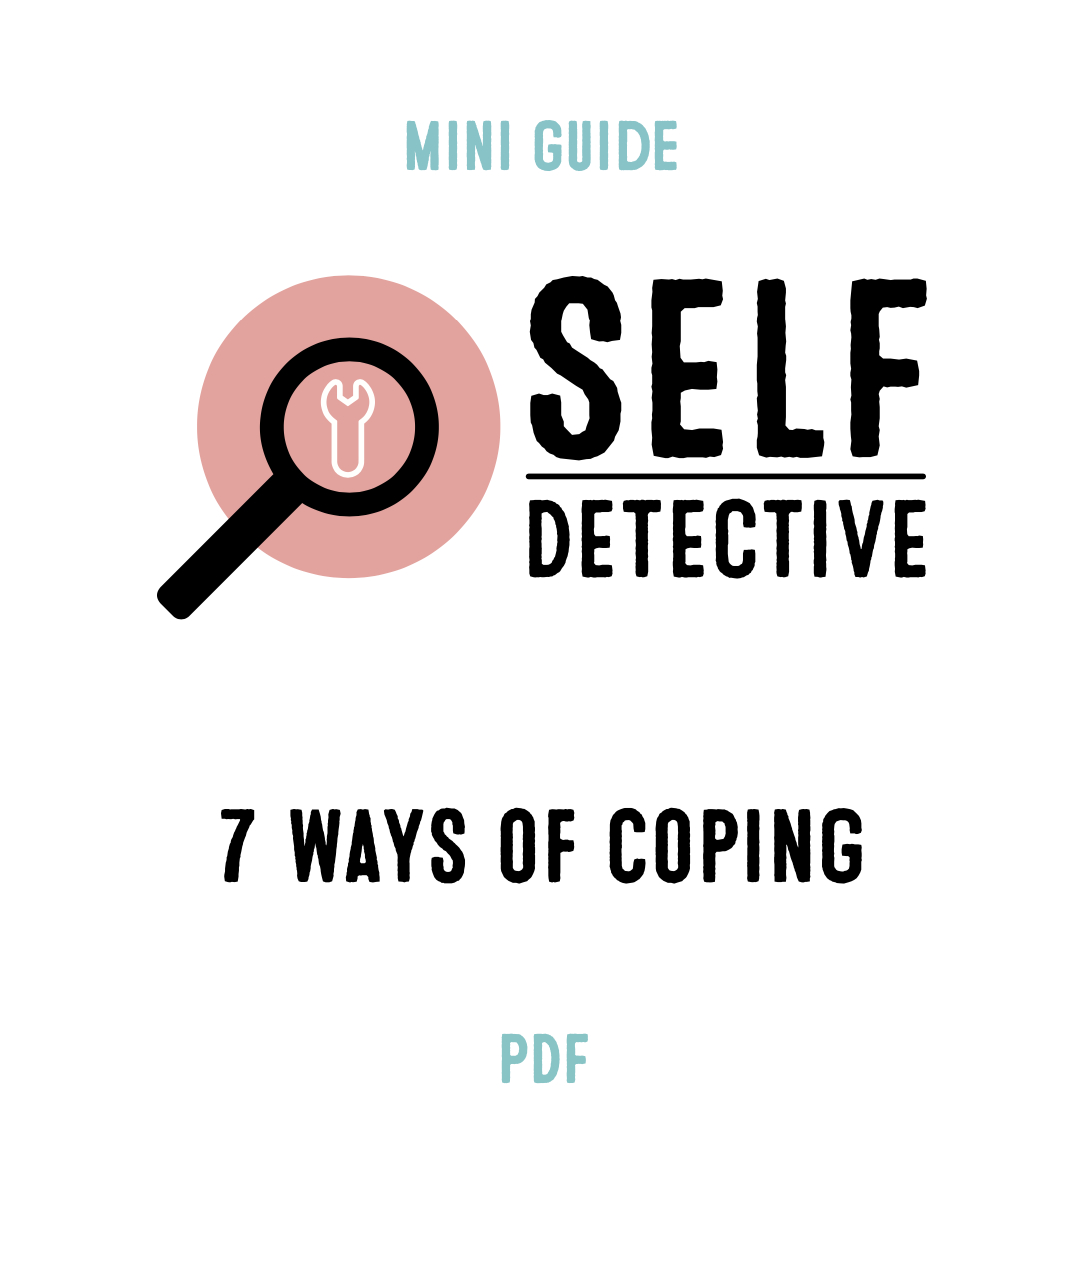 7 Ways of Coping (PDF version)